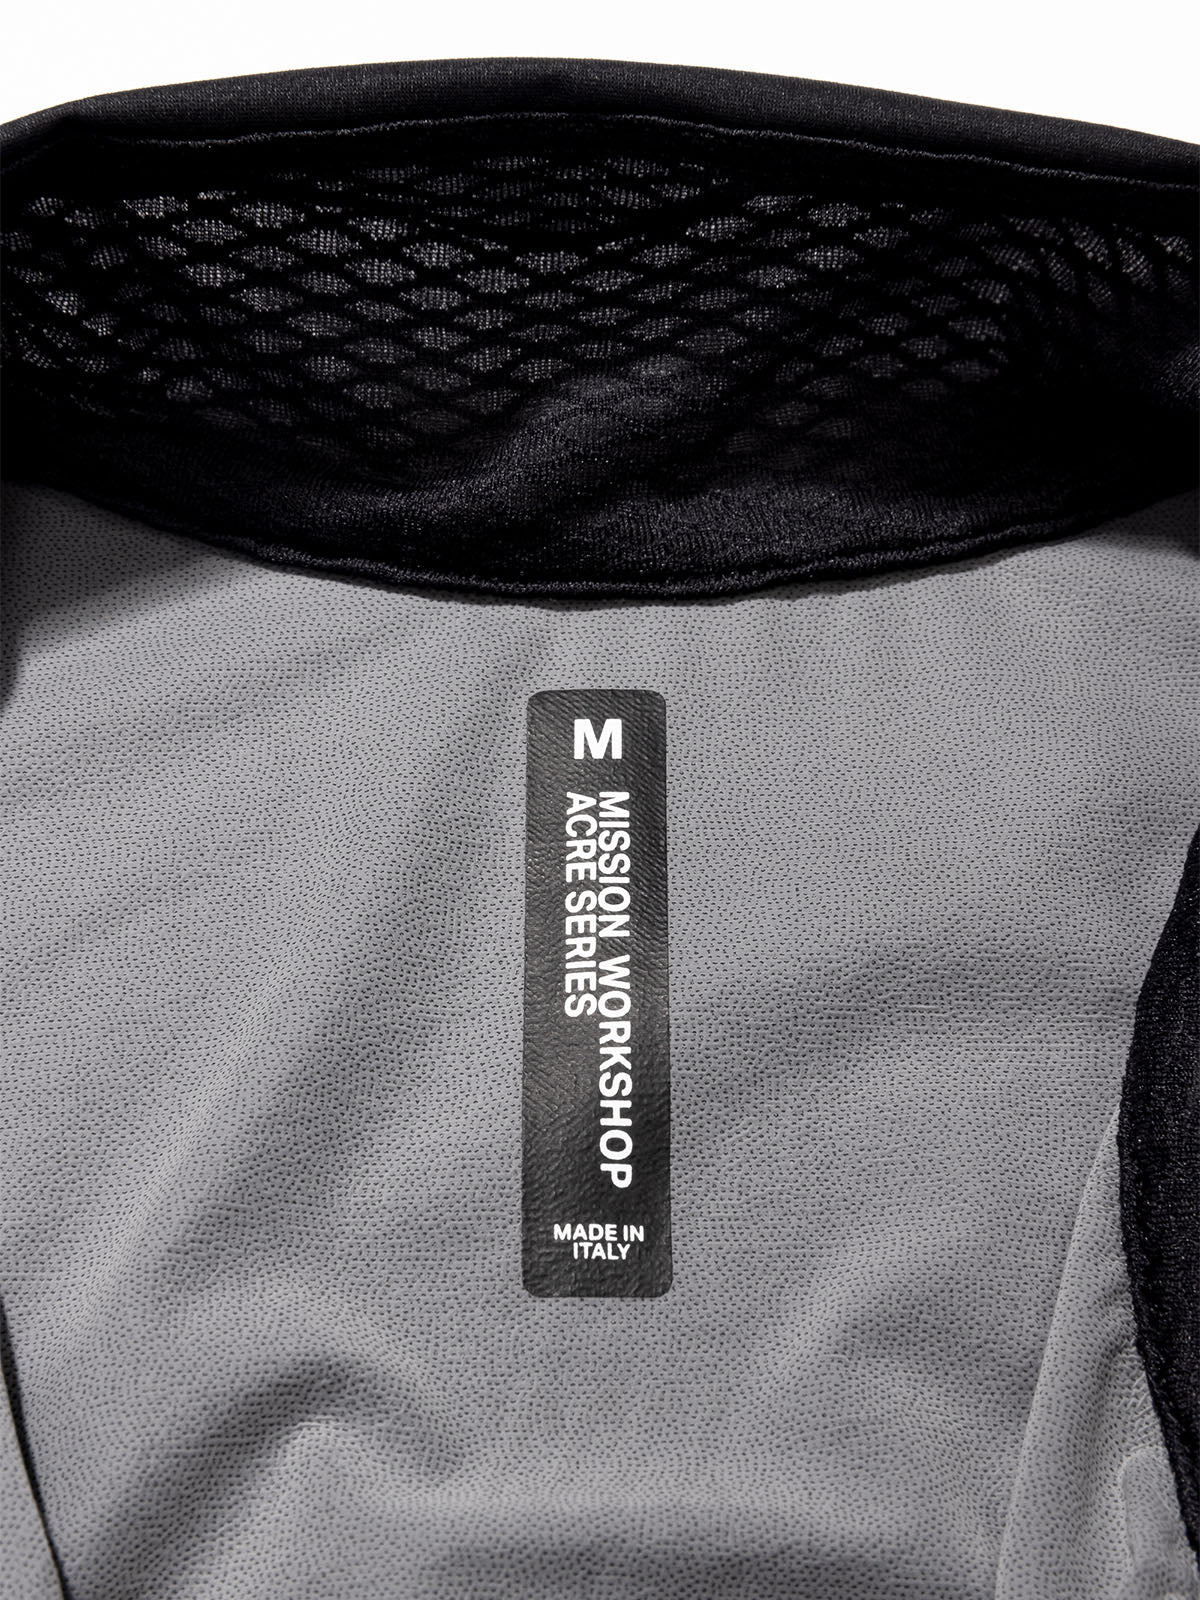 Altosphere Jacket by Mission Workshop - Säänkestävät laukut ja tekniset vaatteet - San Francisco & Los Angeles - Rakennettu kestämään - ikuinen takuu